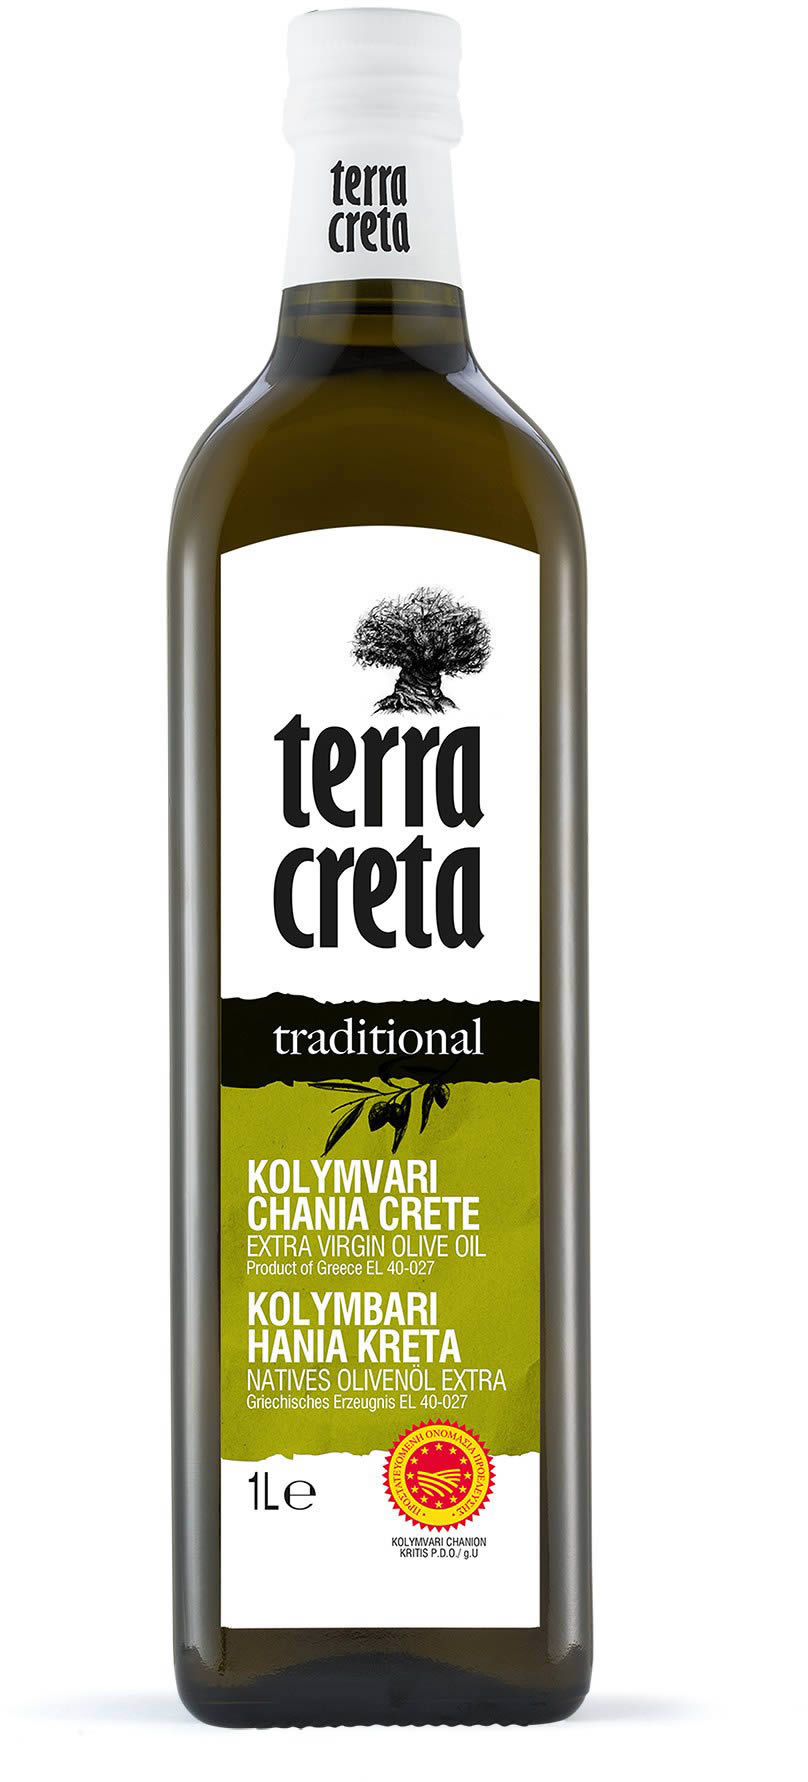 Terra Creta - Extra natives Olivenöl "traditional" g.U. 1 l (Flasche)